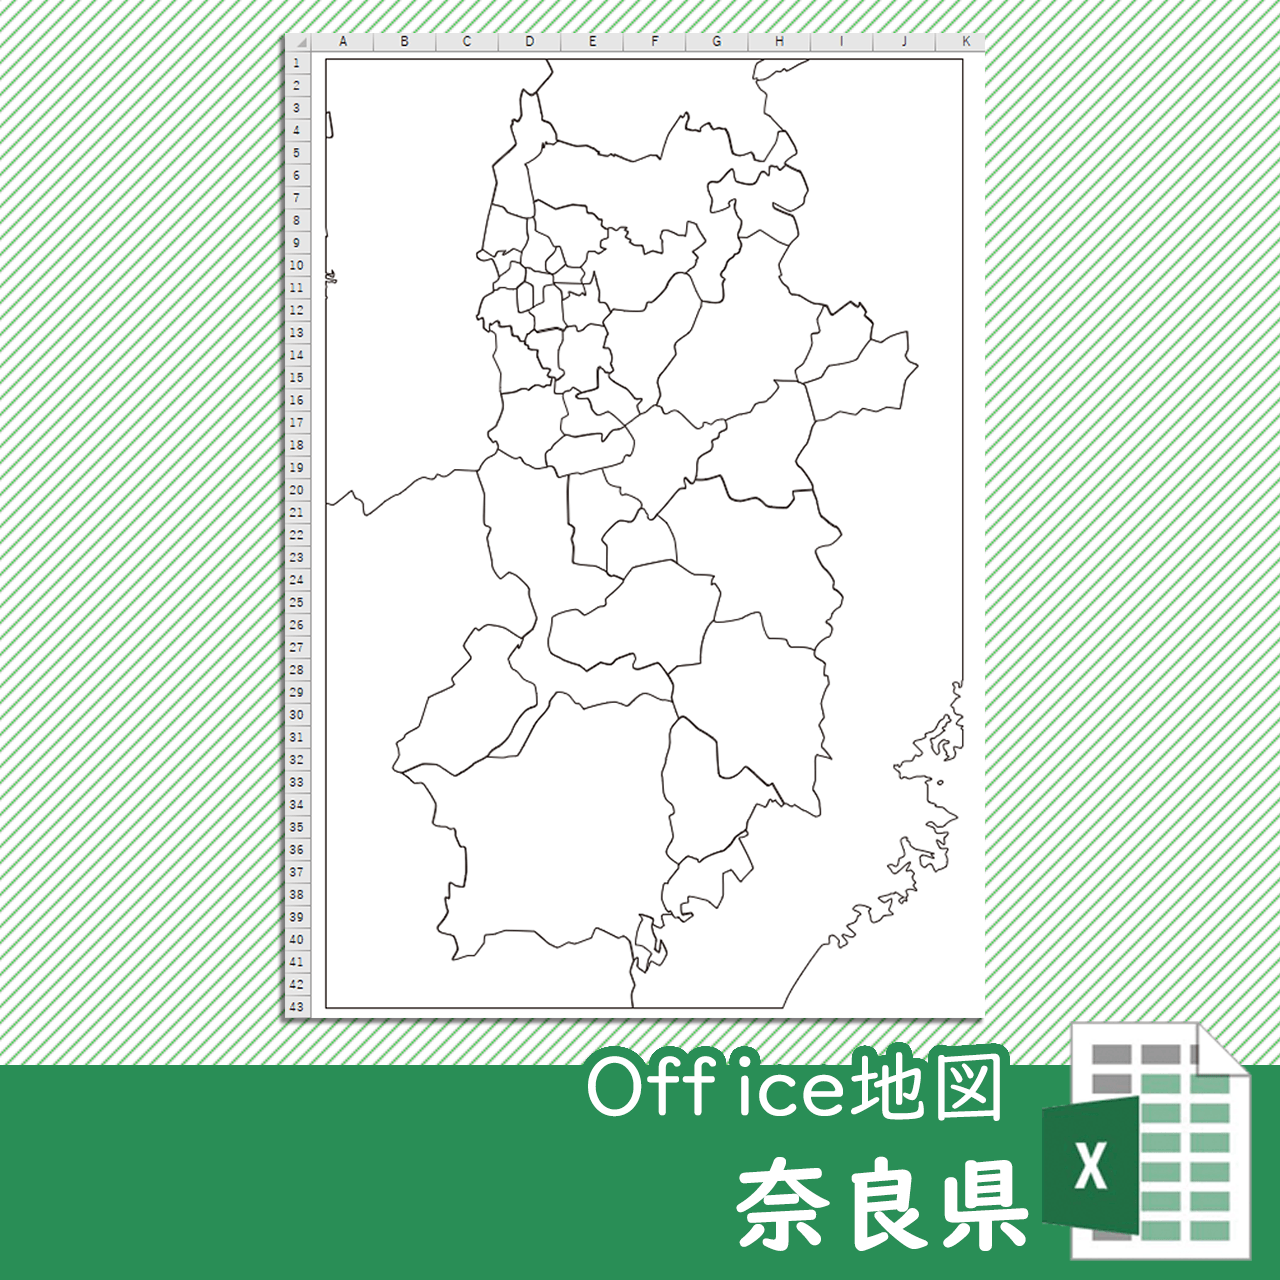 奈良県のoffice地図